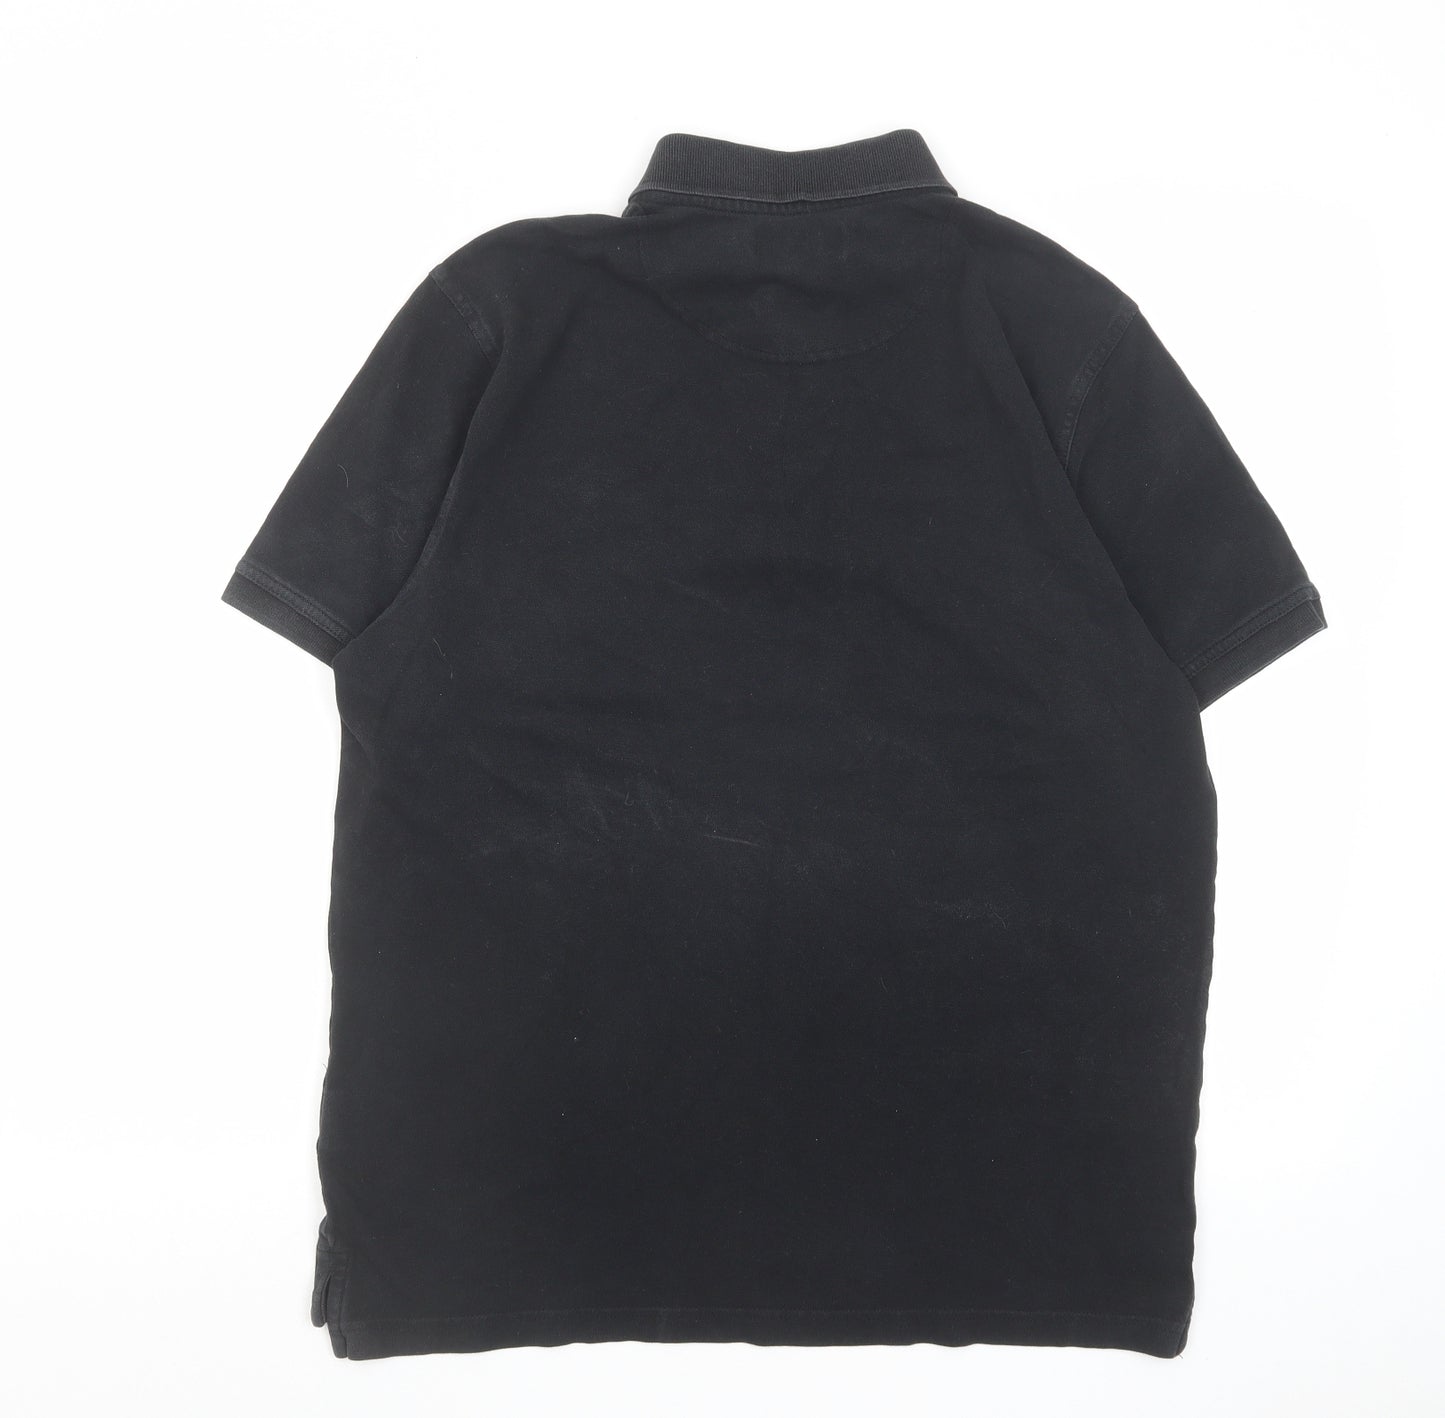 Pierre Cardin Mens Black Cotton Polo Size L Collared Button